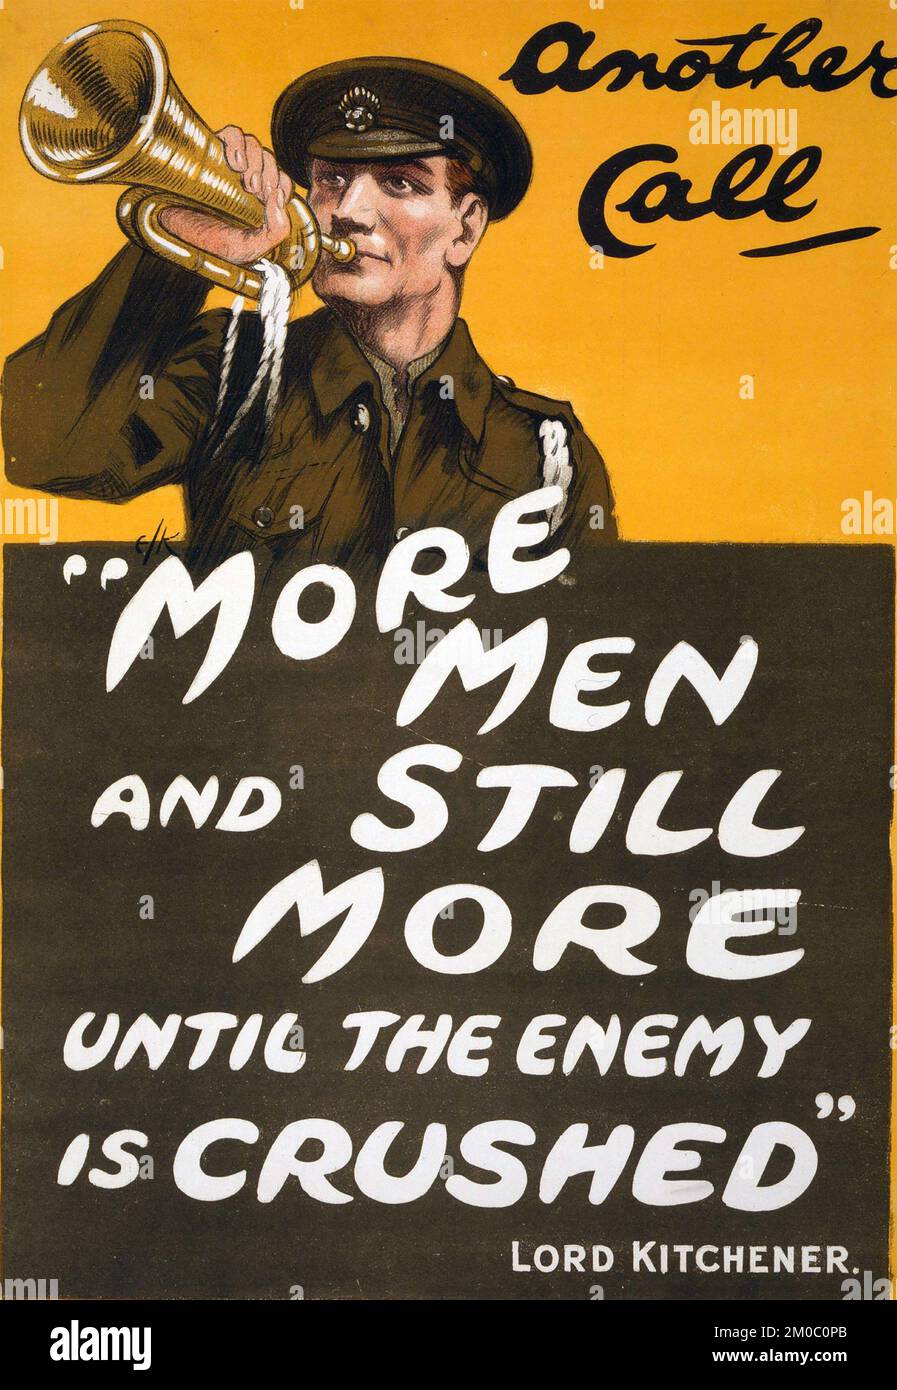 PLUS D'HOMMES ET ENCORE PLUS D'HOMMES... lithographie affiche britannique publiée par la Commission parlementaire de recrutement en décembre 1914 Banque D'Images